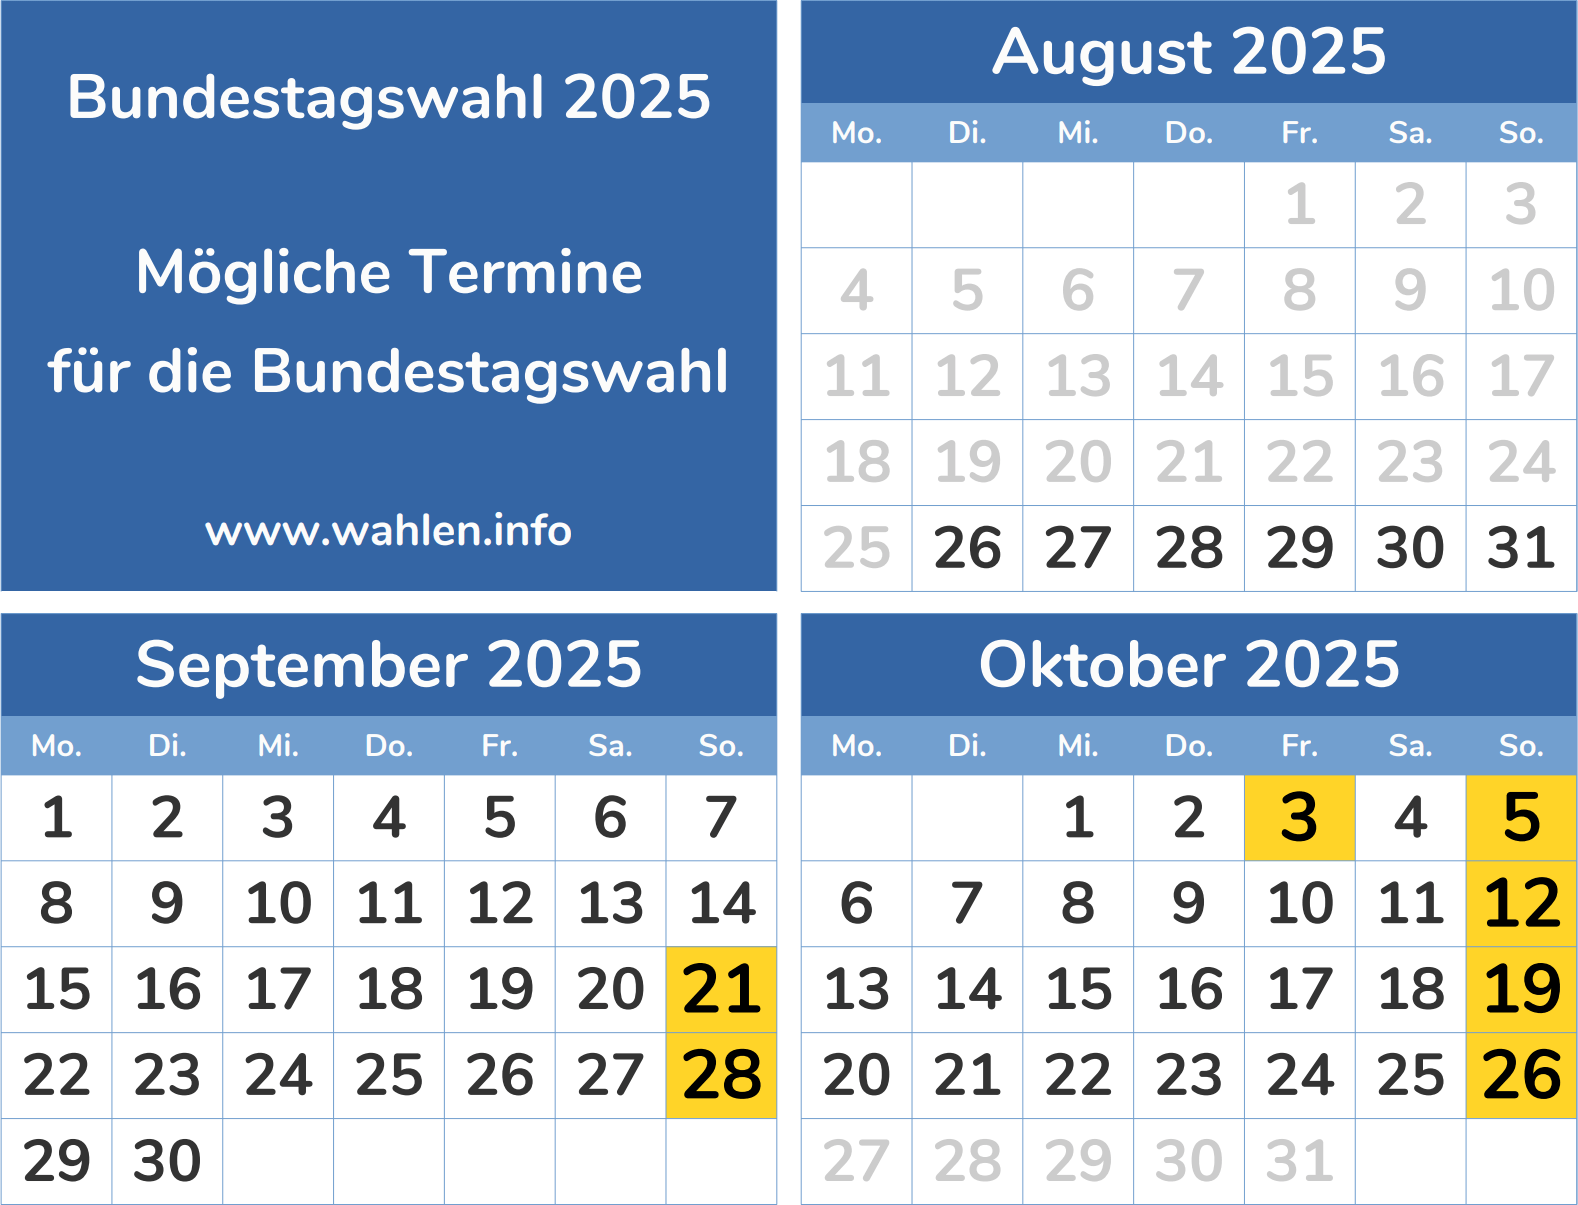 Wahltermin für die Bundestagswahl 2025 (mögliche Termine)